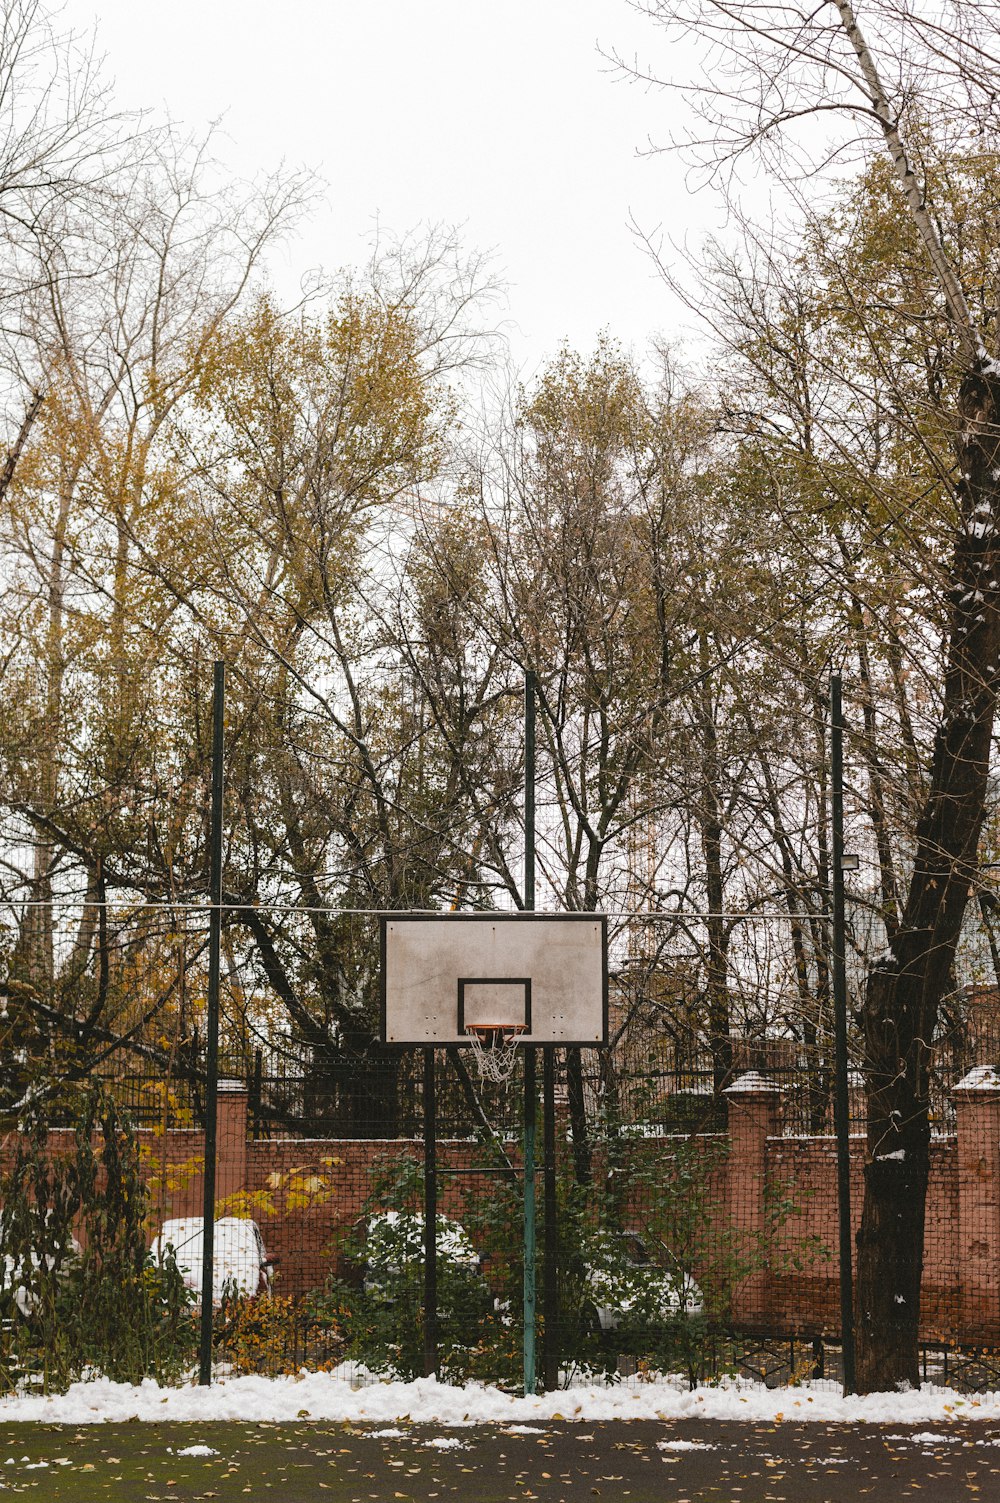 雪に覆われた公園の真ん中にあるバスケットボールのフープ